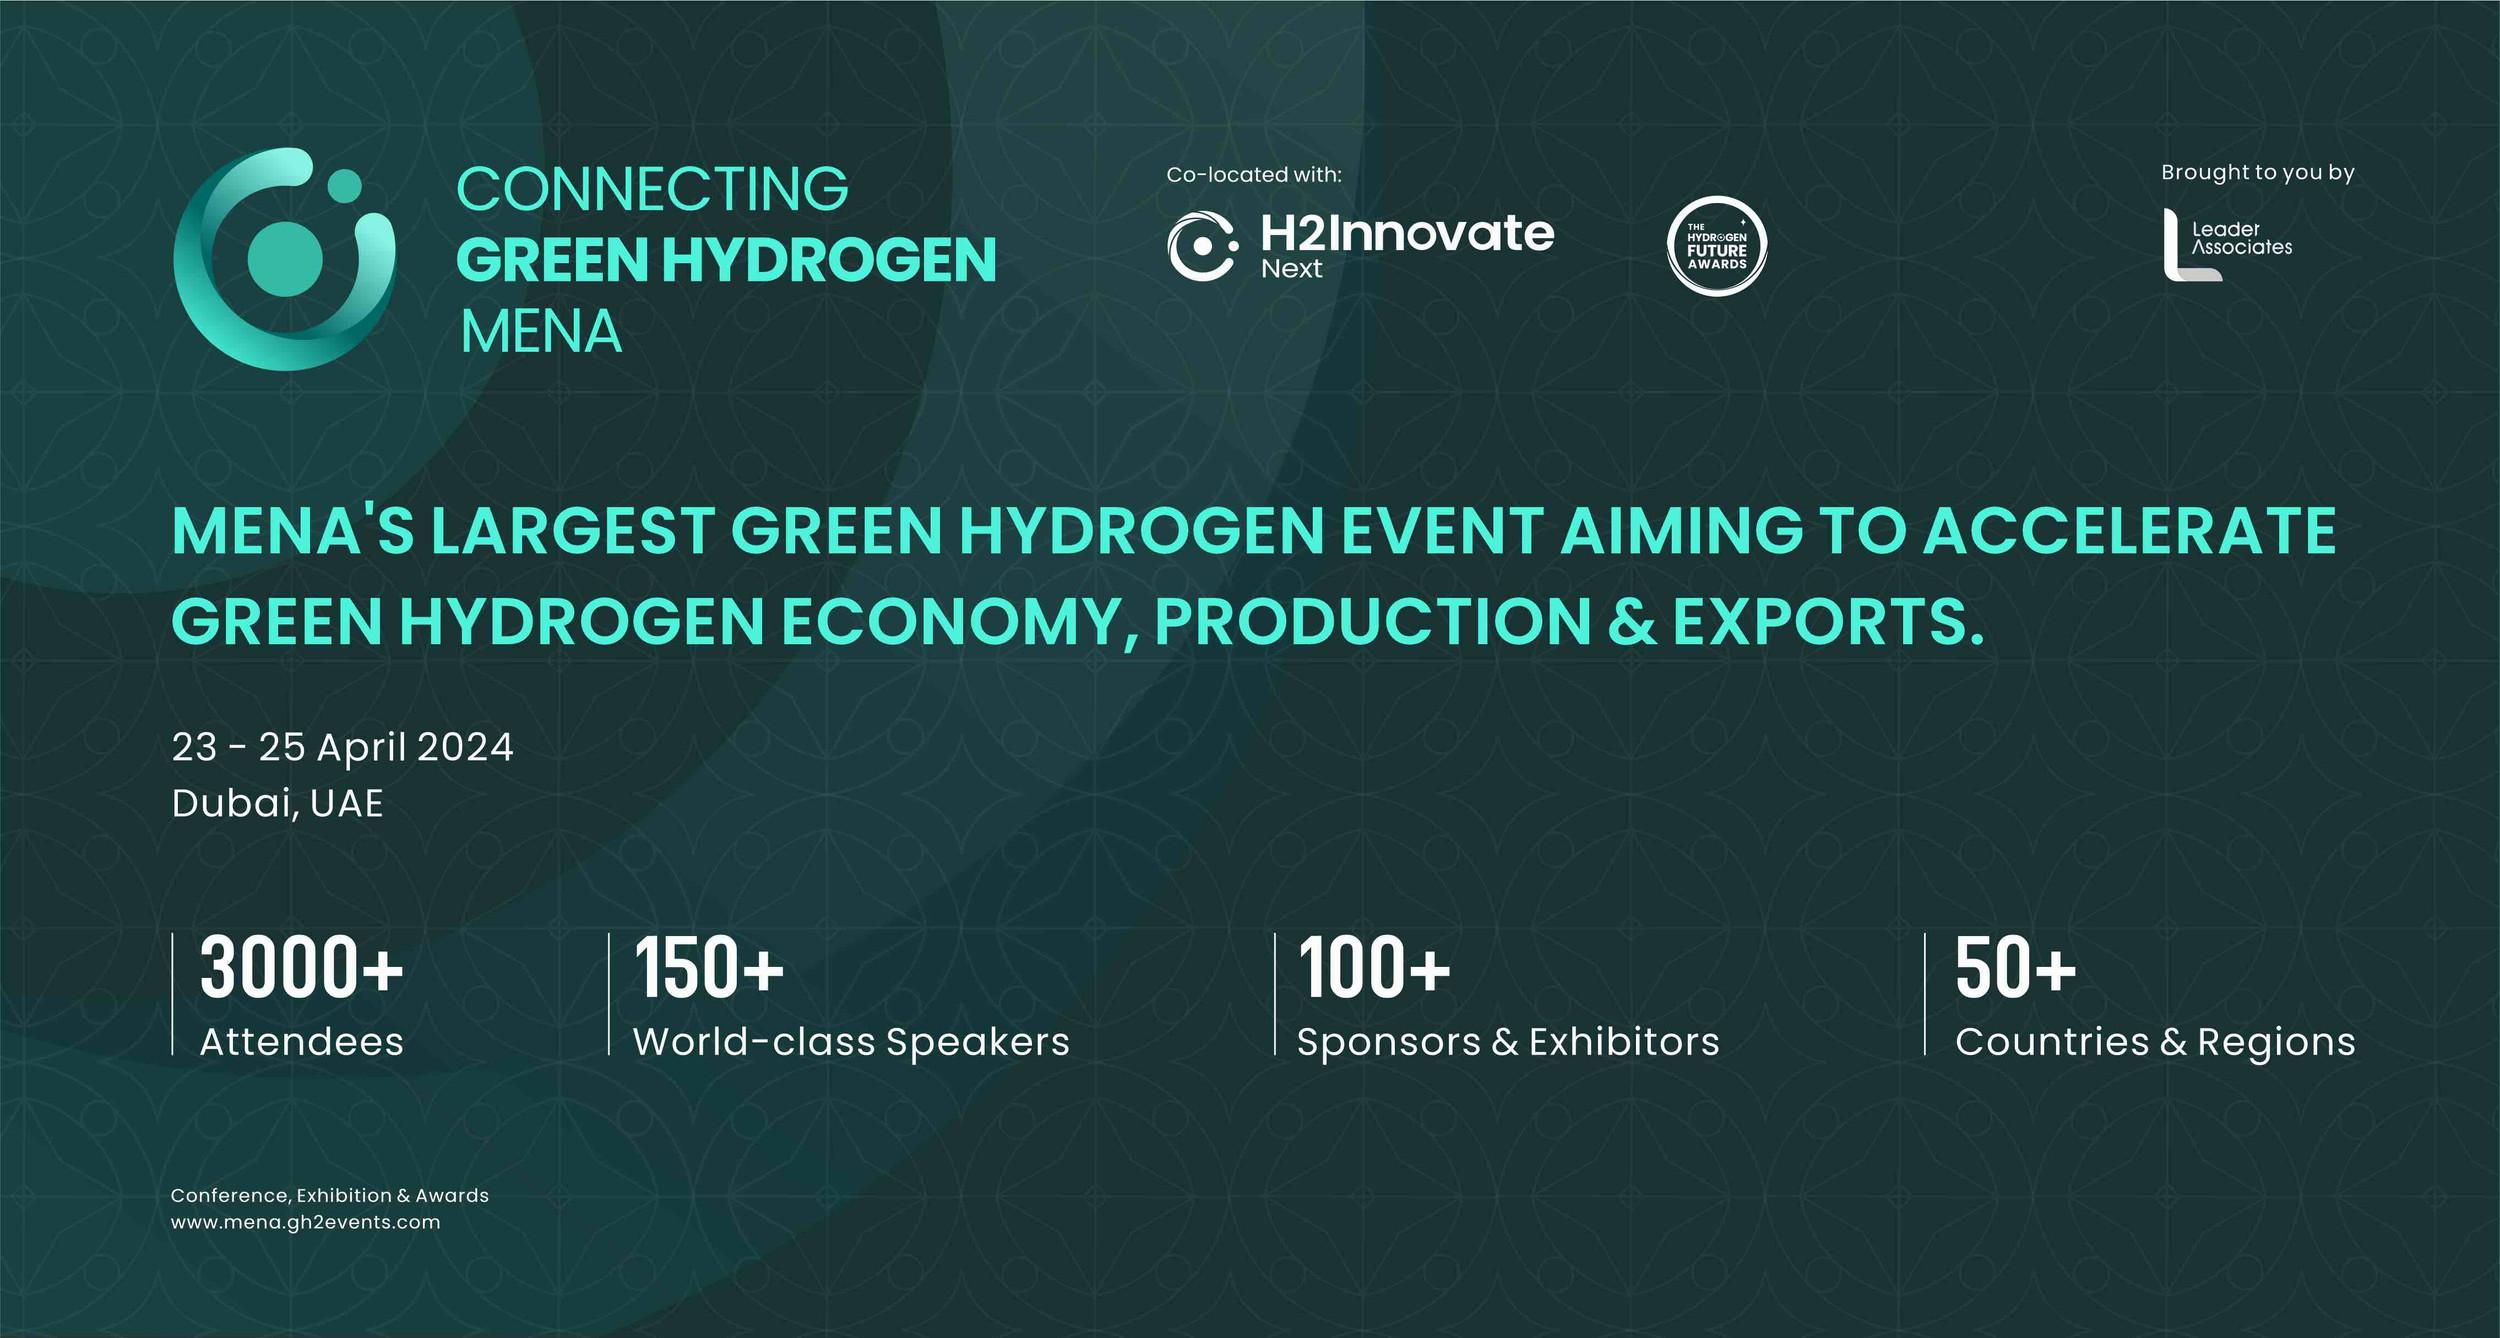 Whitepaper - Hydrogen Market Development | Connecting Green Hydrogen MENA Conference & Exhibition